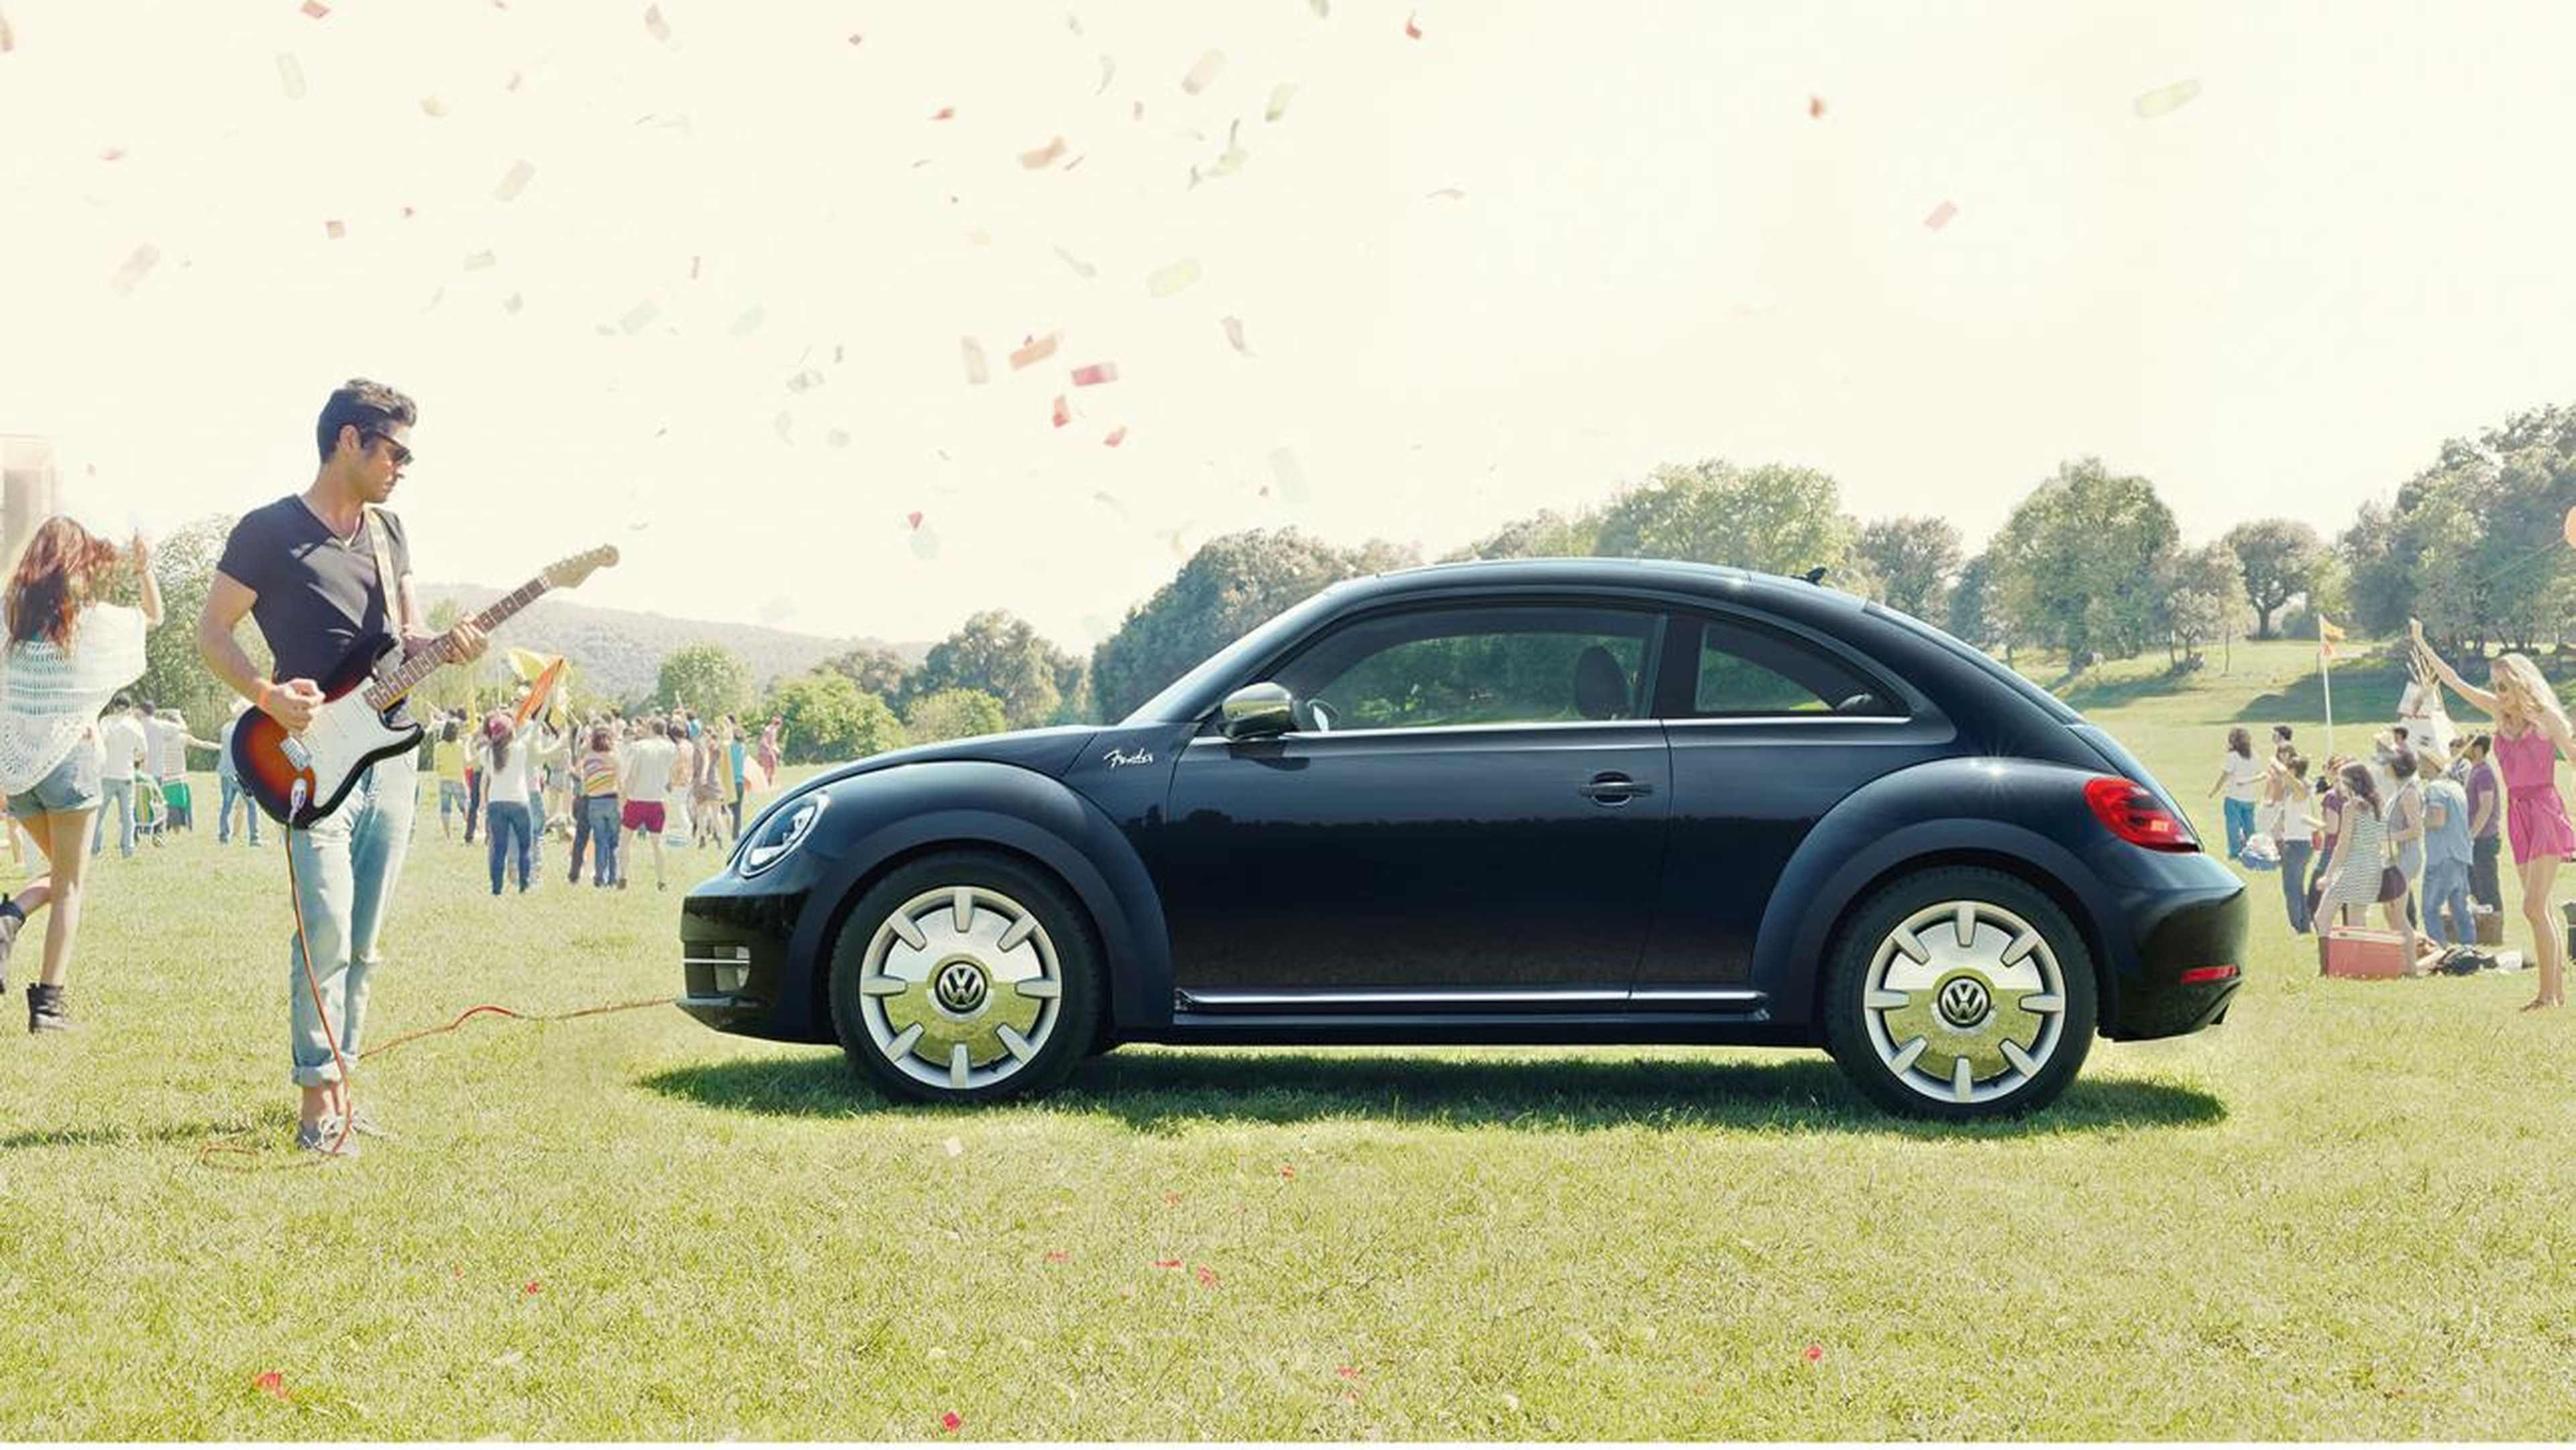 Volkswagen Beetle Fender Edition